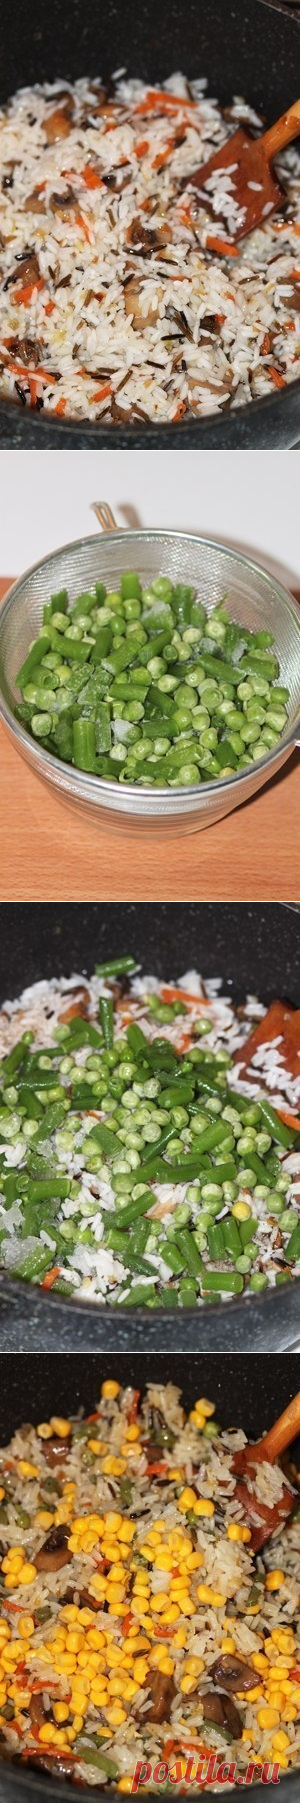 Как приготовить невероятно вкусный рис с овощами и грибами - рецепт, ингридиенты и фотографии